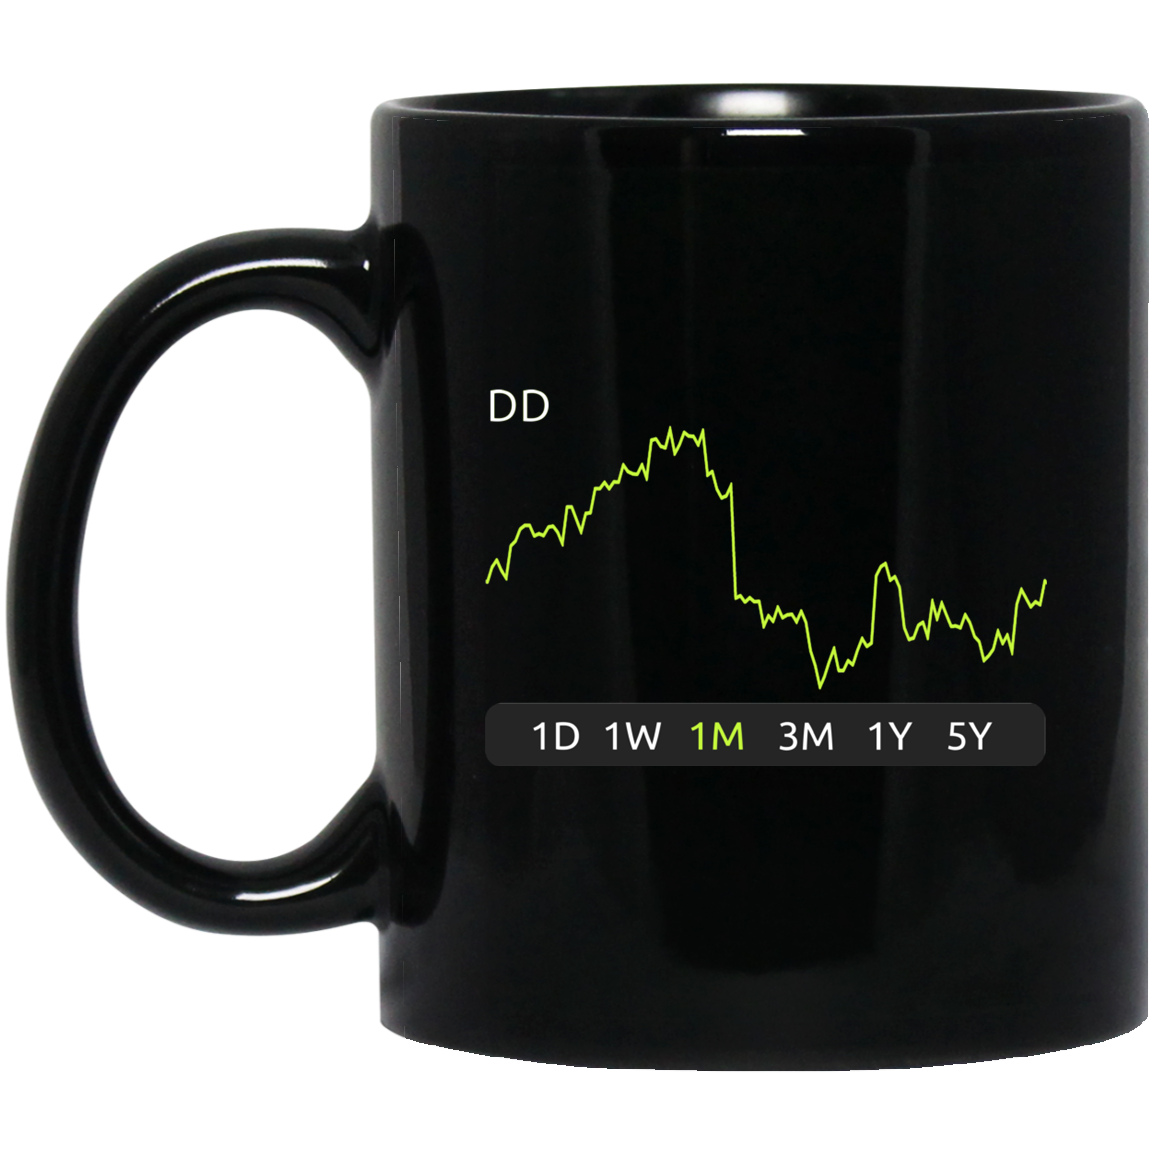 DD Stock 1m Mug